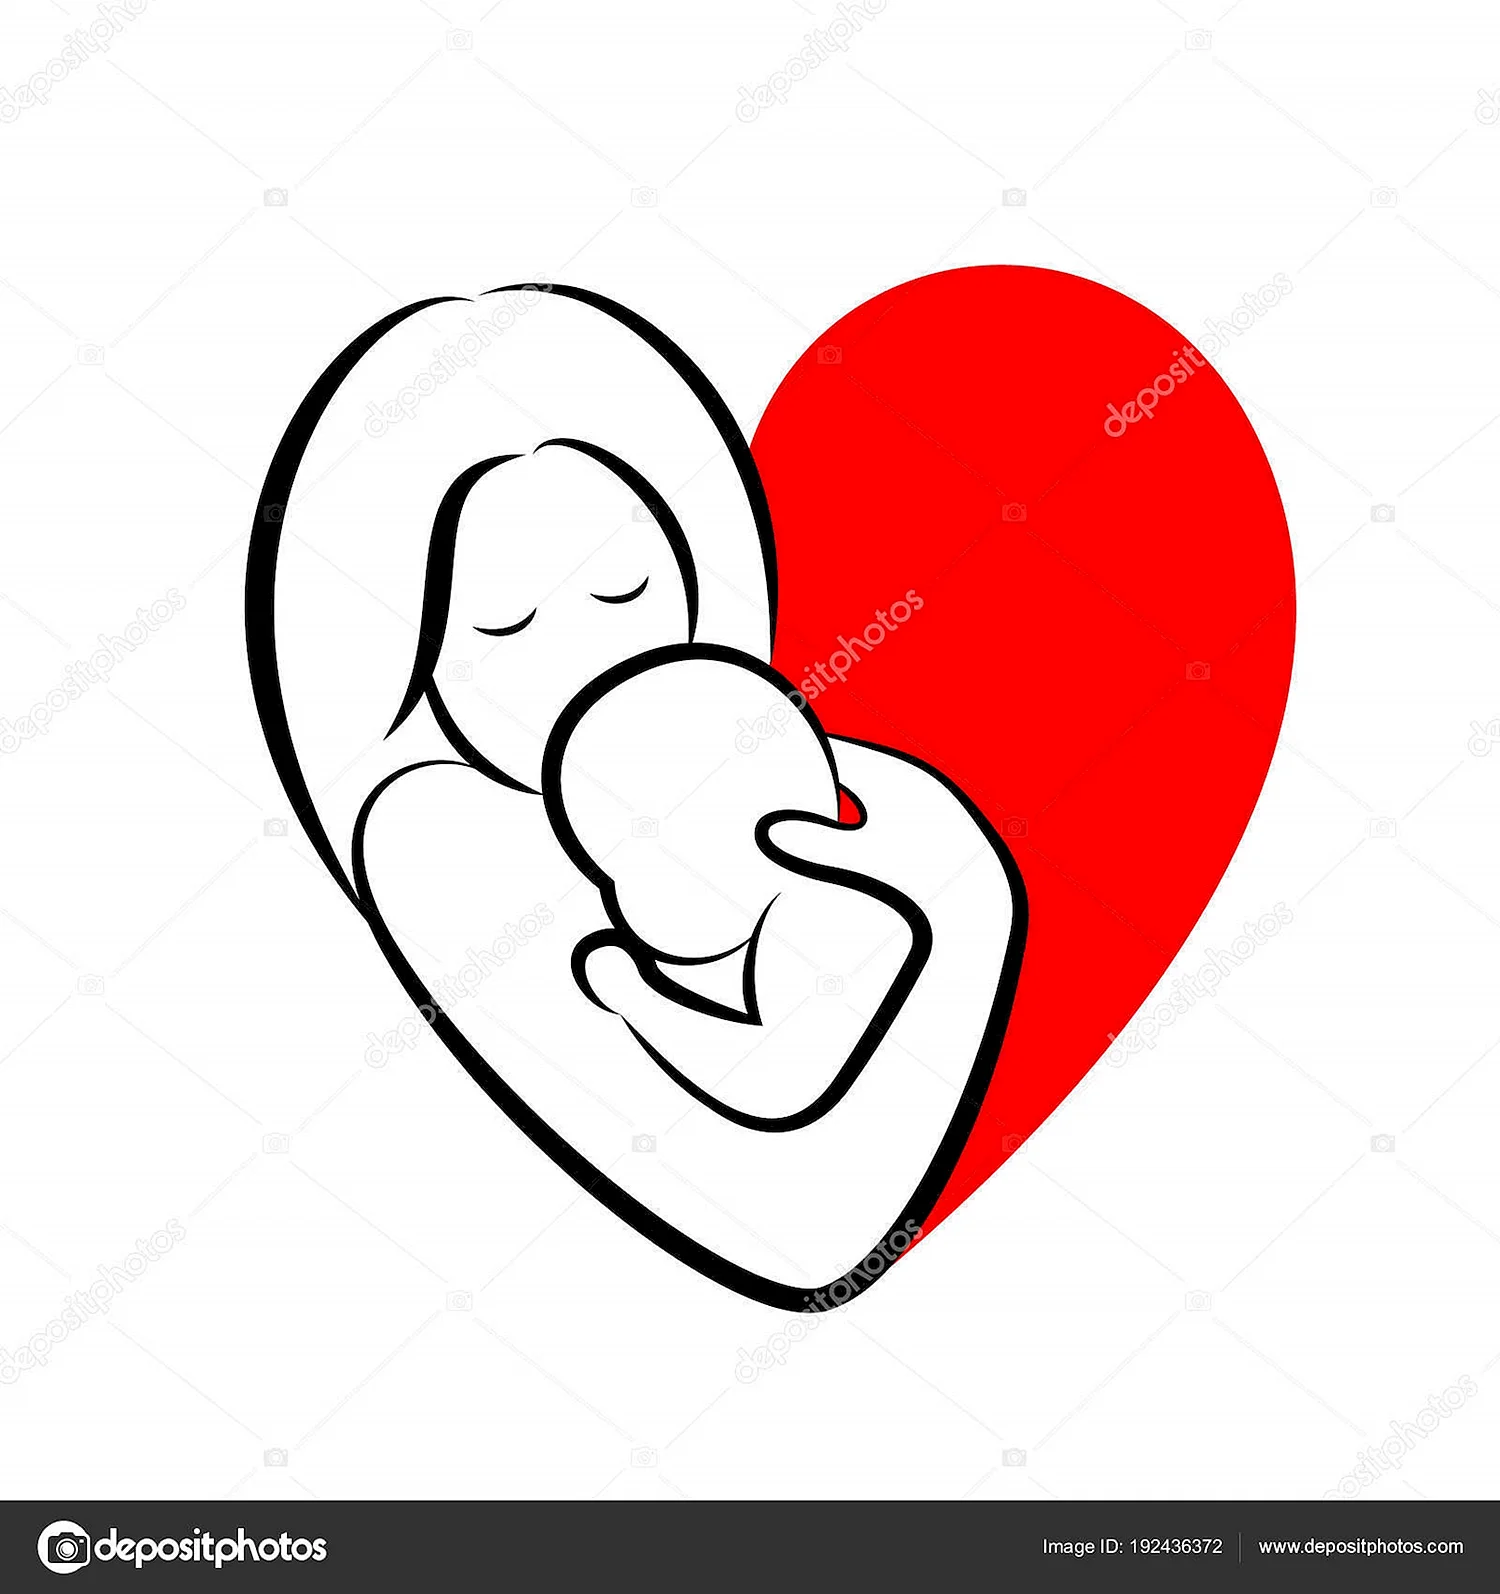 Символ матери и ребенка в сердечке